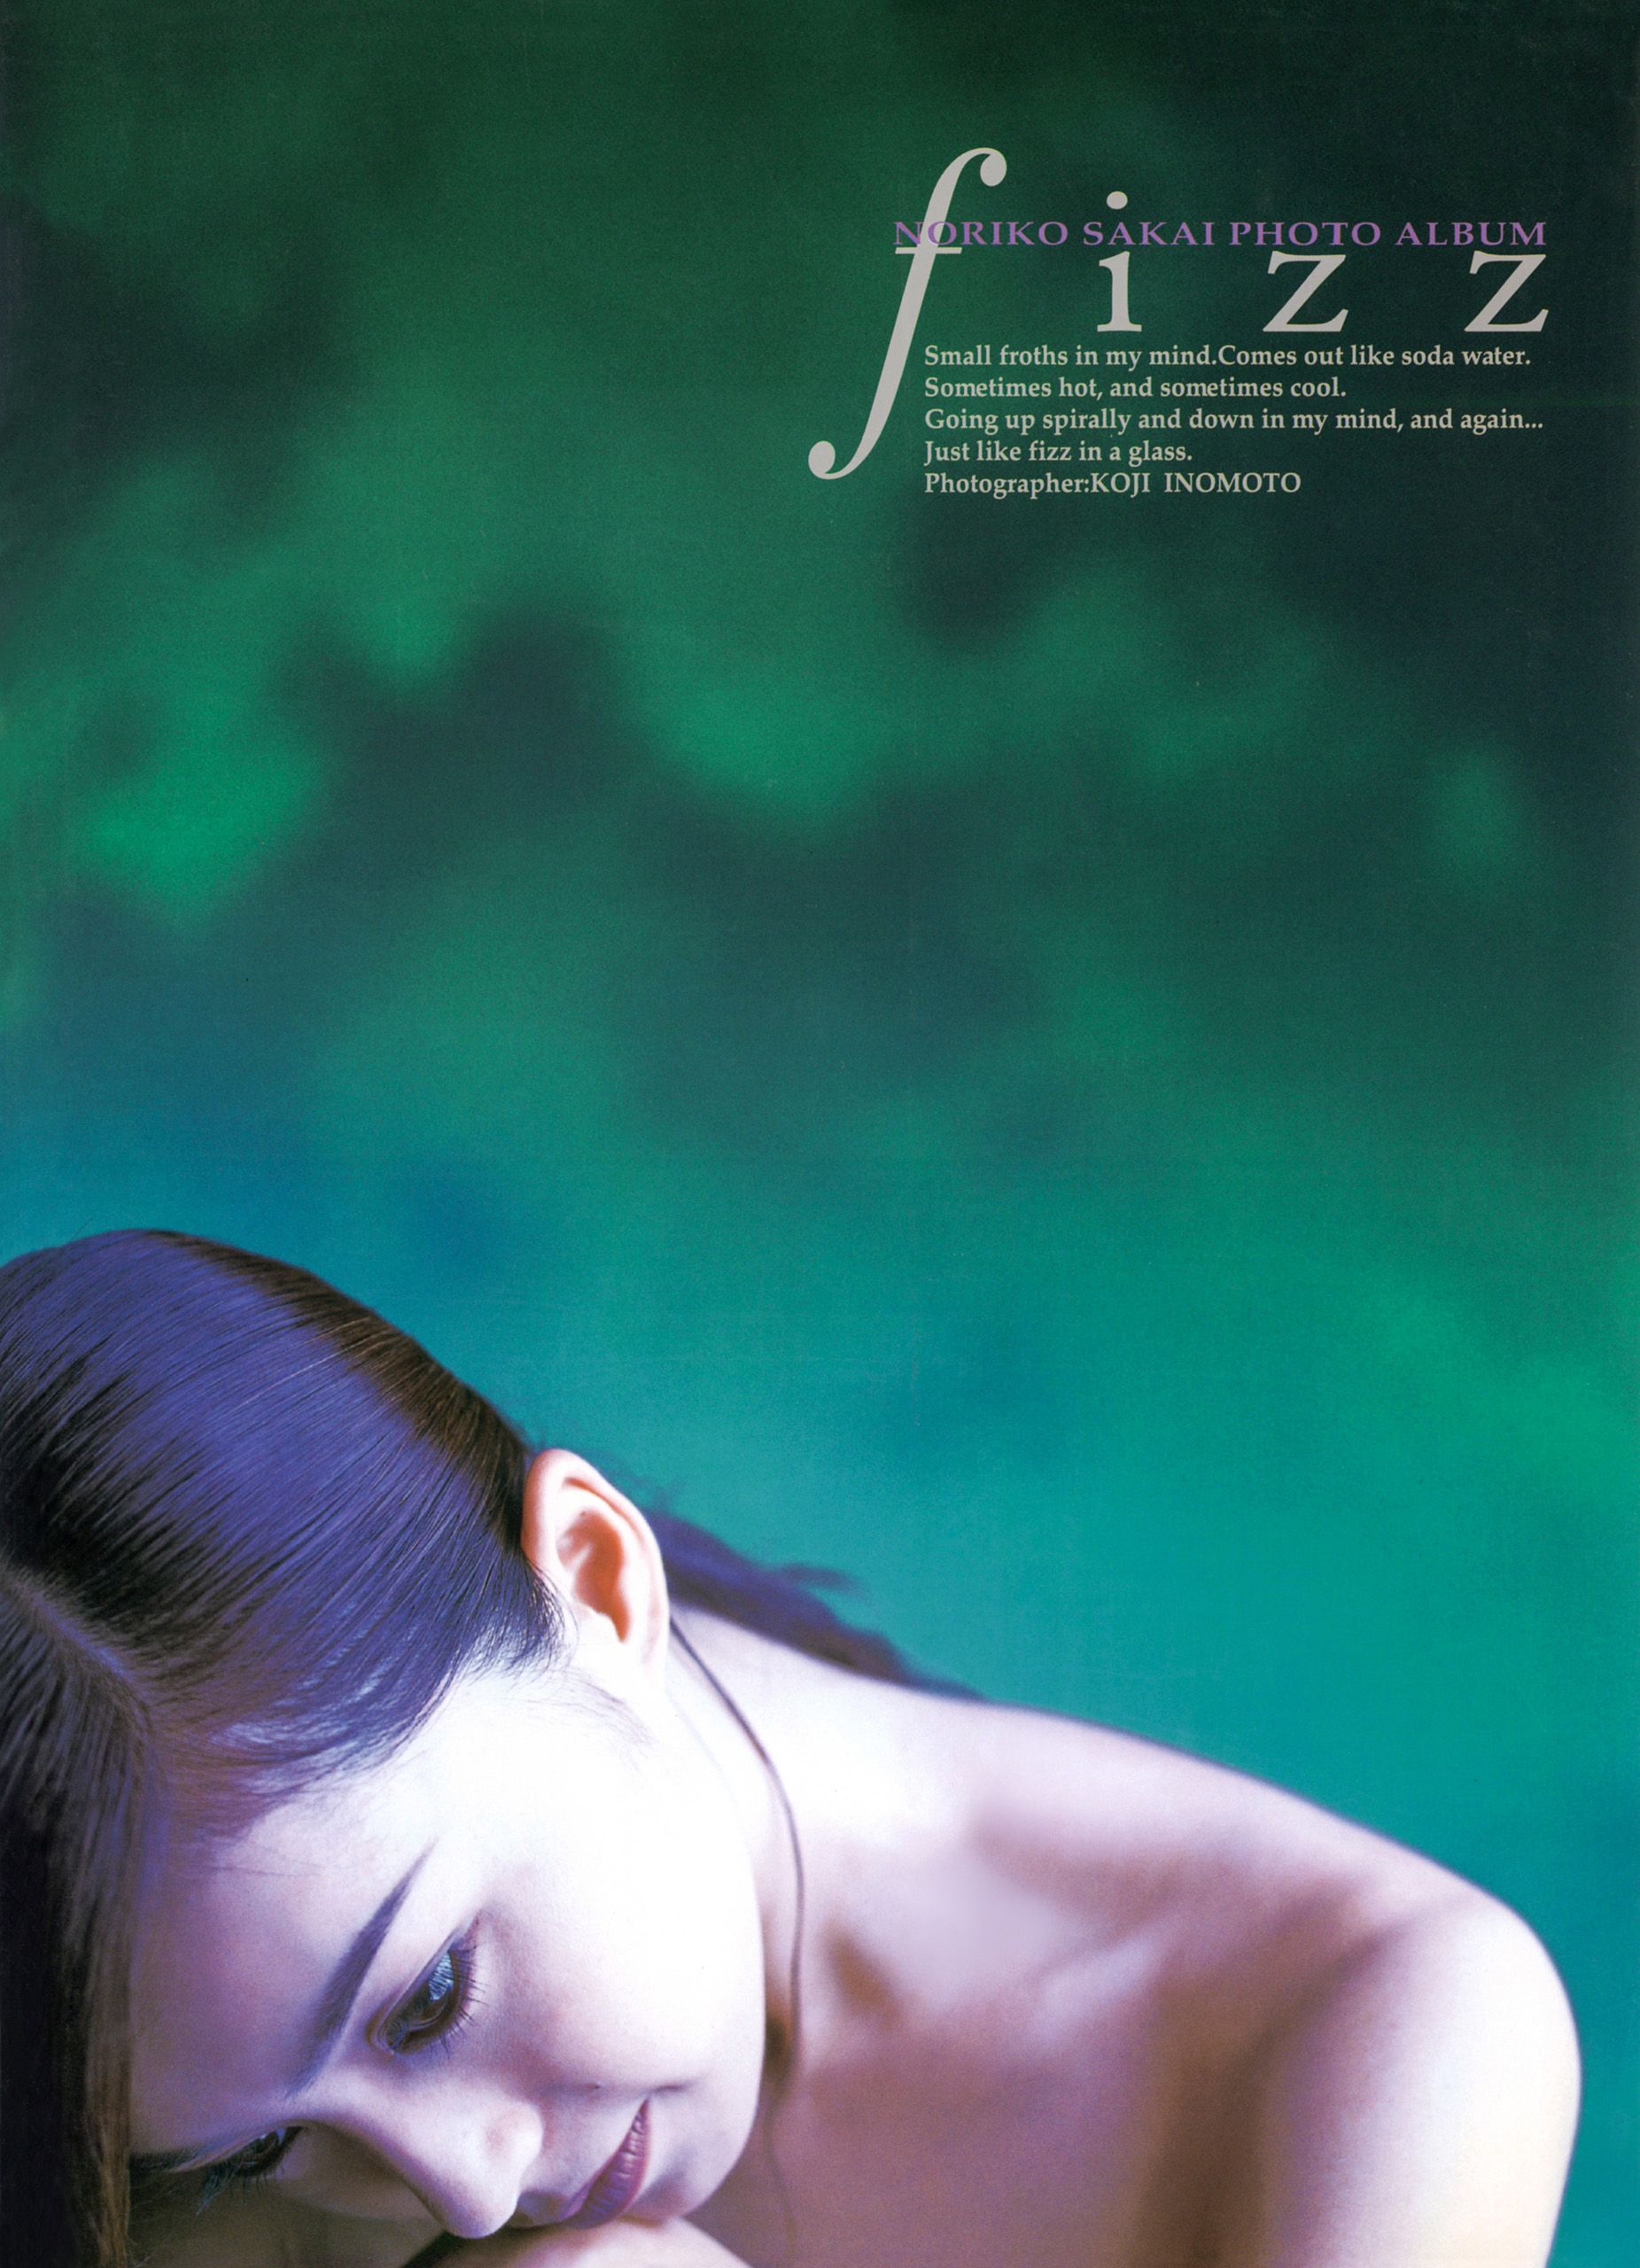 酒井法子 写真集 『 fizz 』(写真集) - 電子書籍 | U-NEXT 初回600円分無料